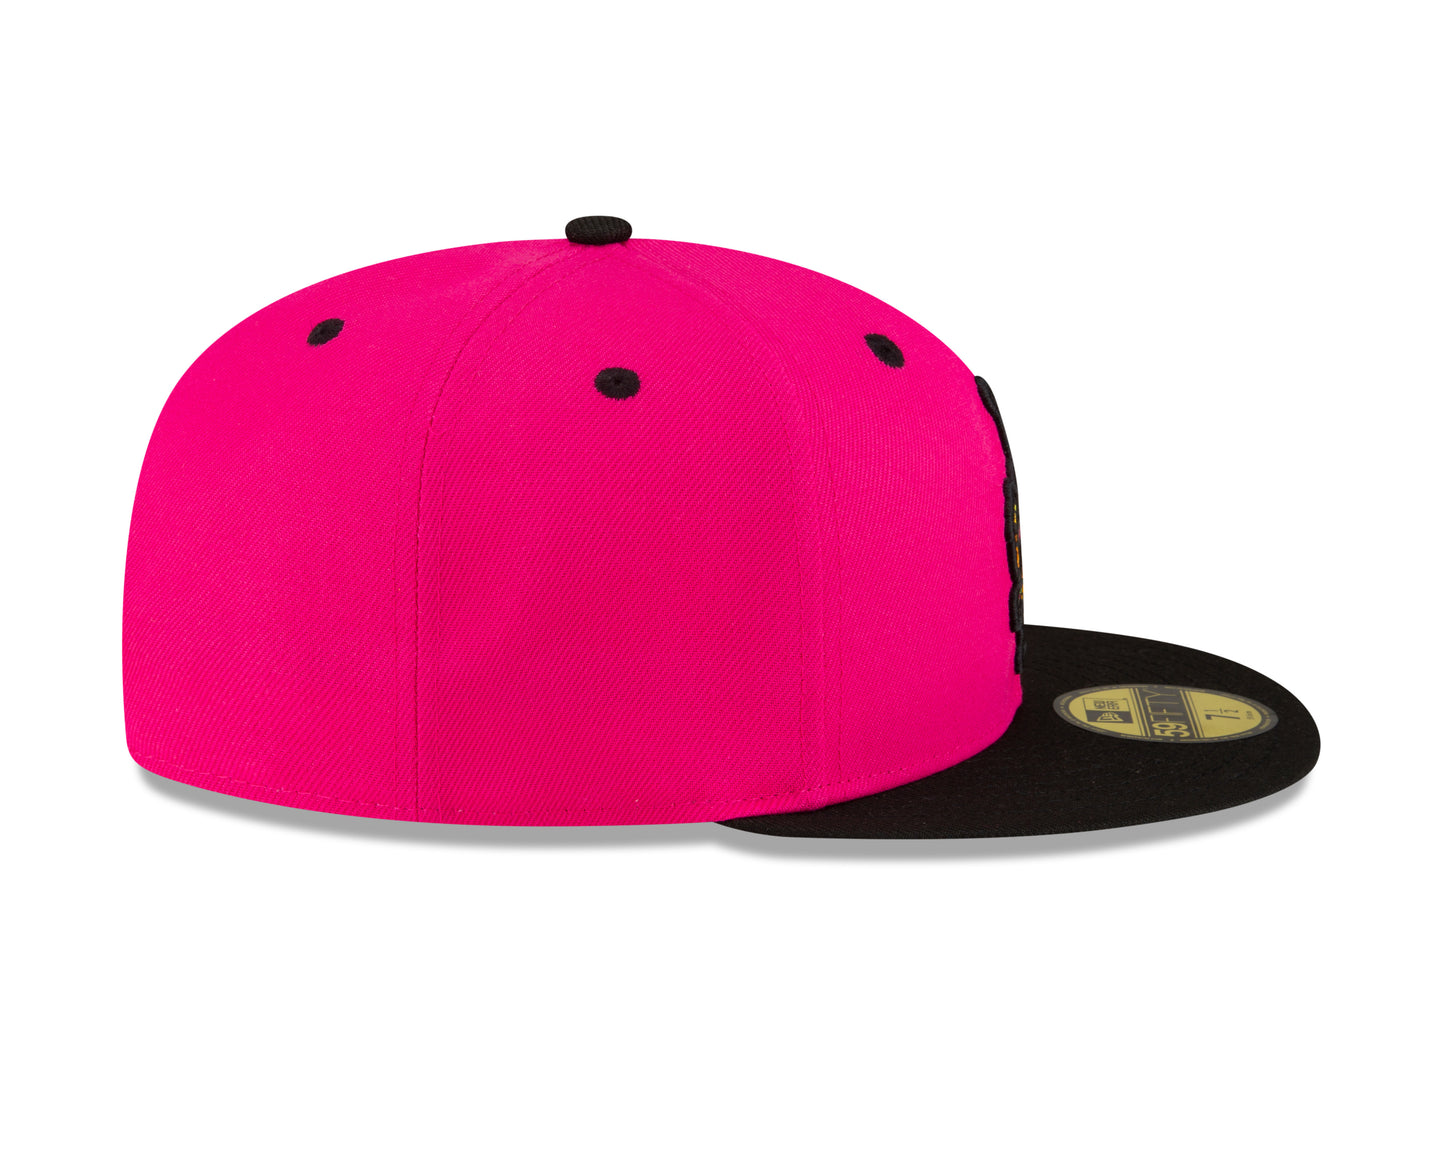 Party Animals 5950 Alternate Hat - Pink